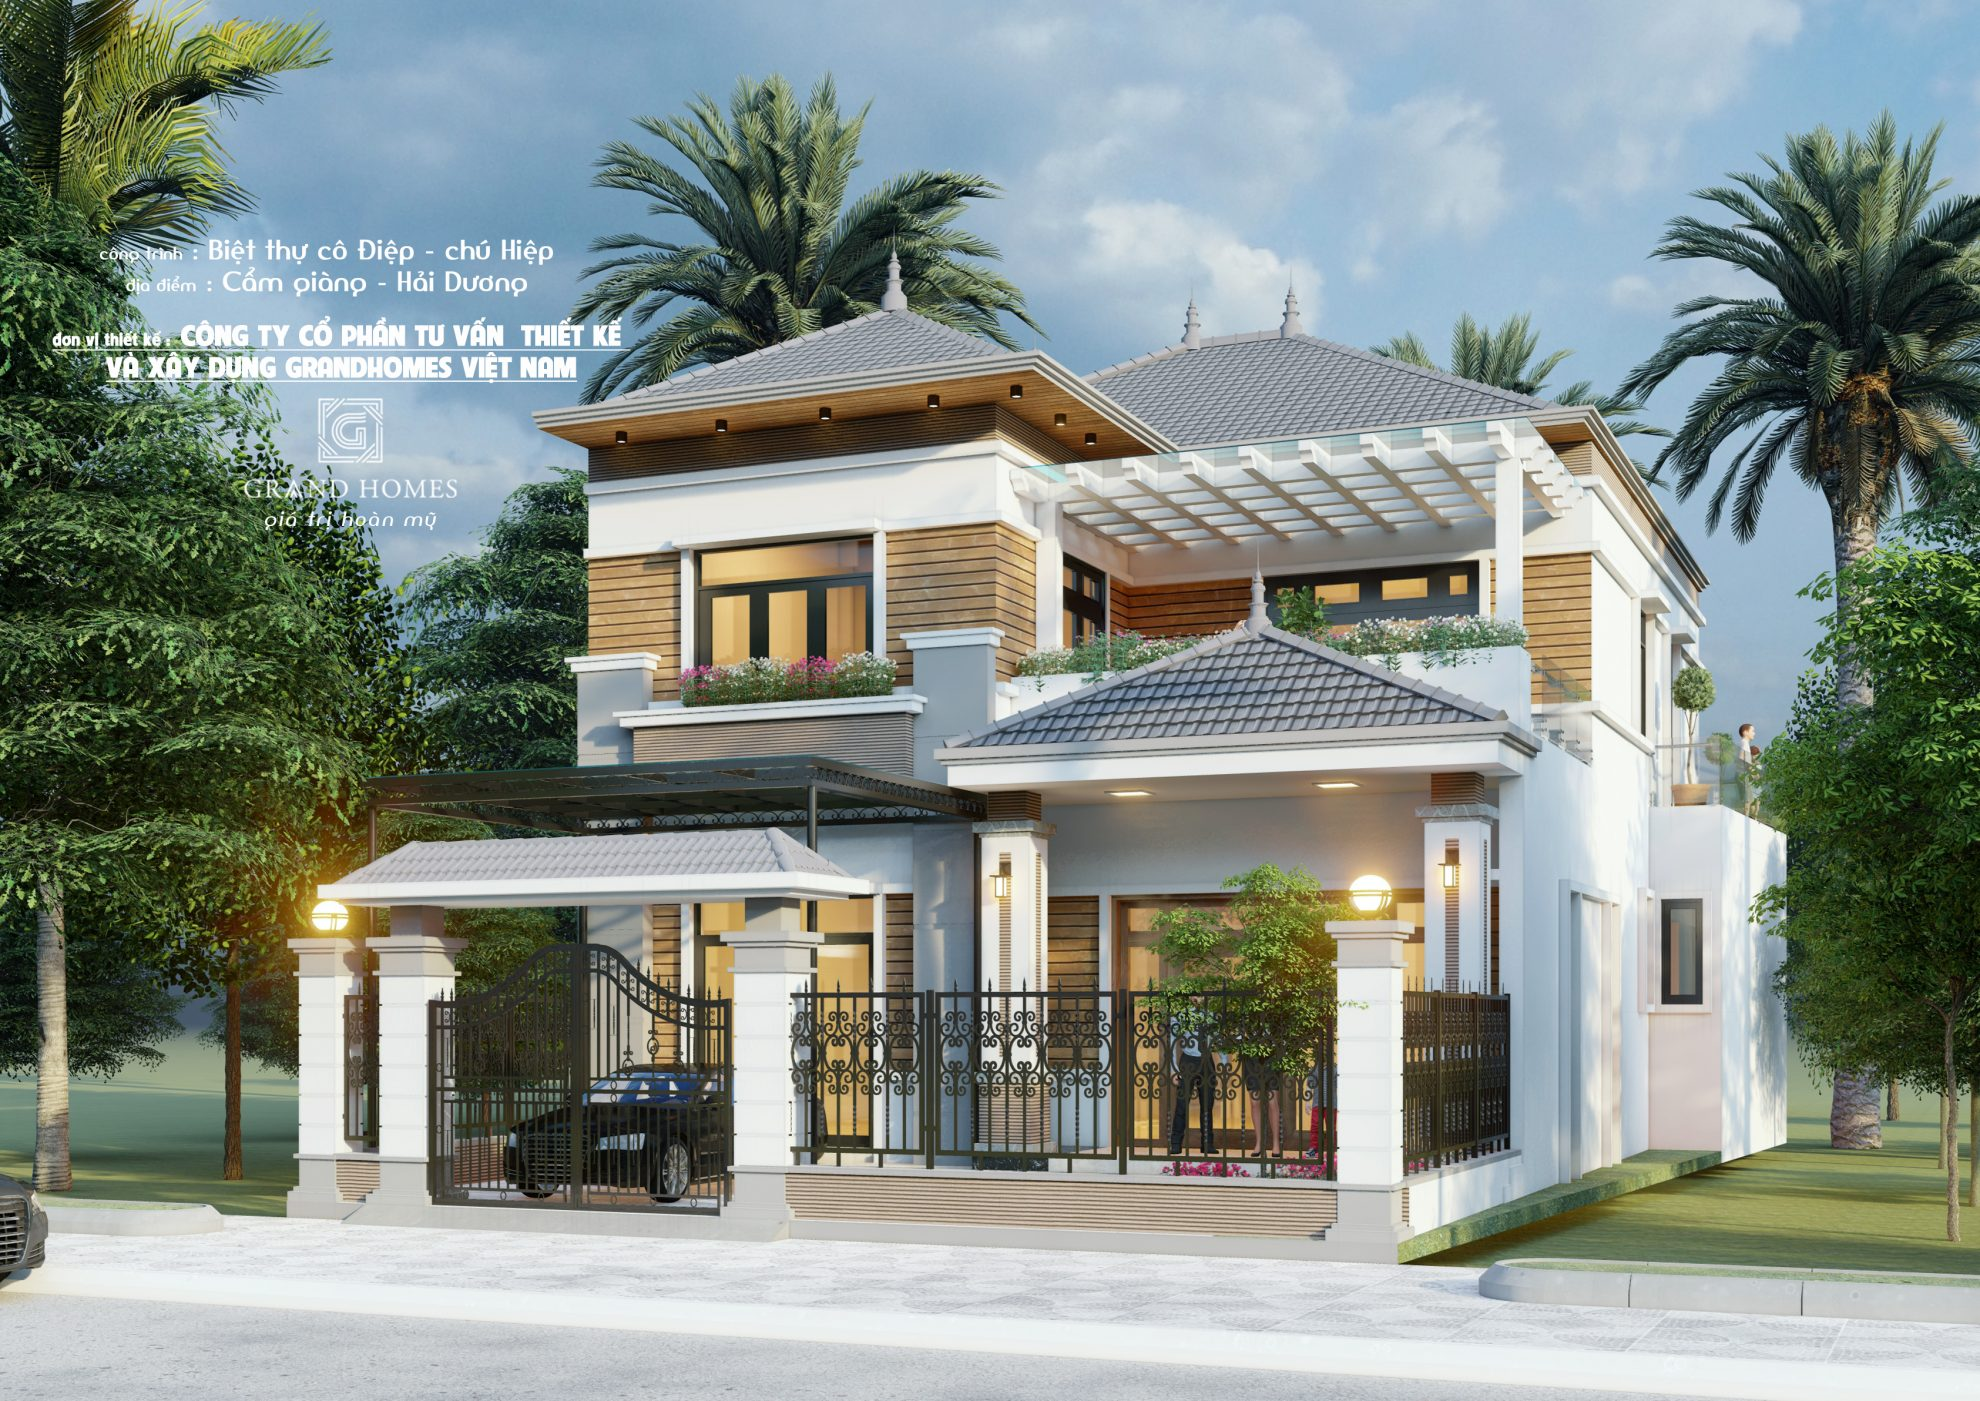 Grand Homes Việt Nam là công ty thiết kế nội thất biệt thự hiện đại - sang trọng - đẳng cấp